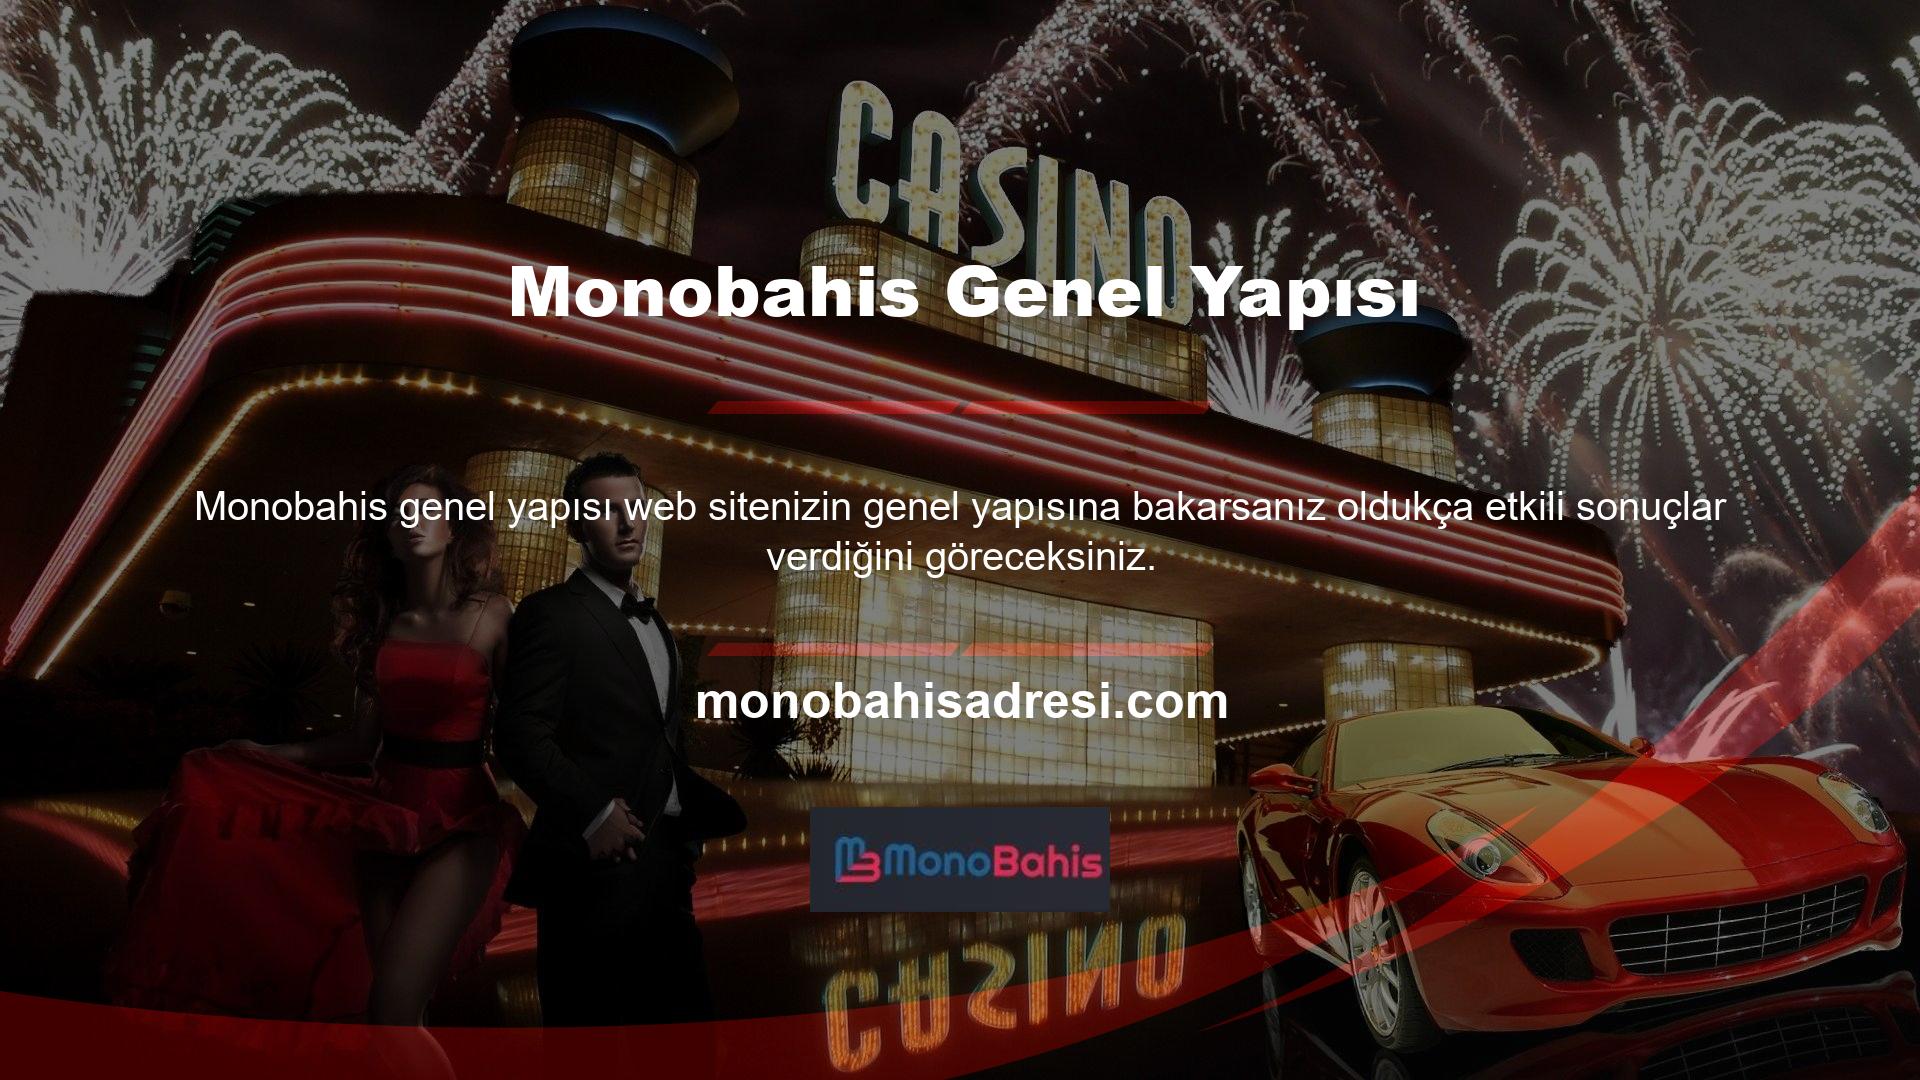 Monobahis, en ünlü yasa dışı casino sitelerinden biridir ve sektörde büyük ilgi görmüştür